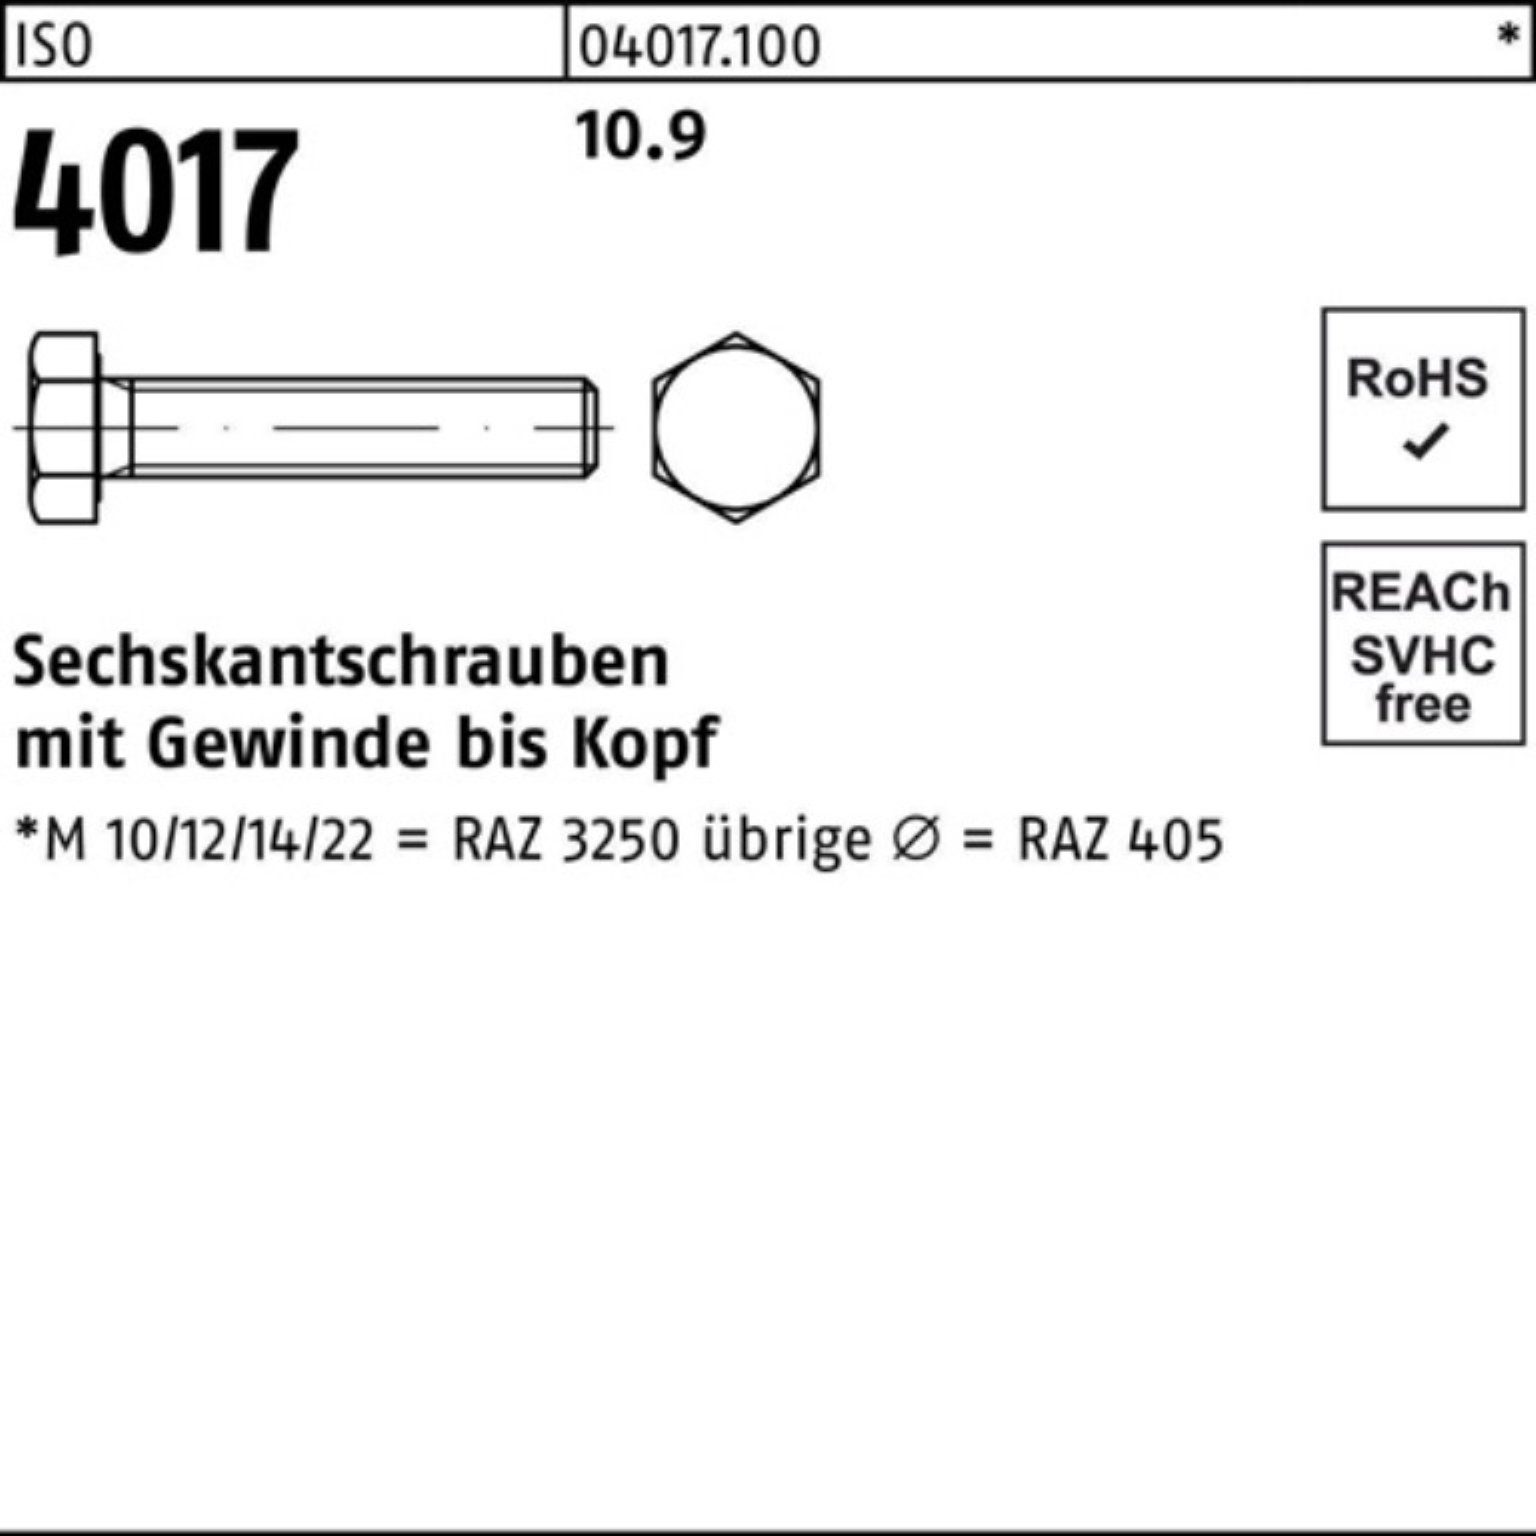 Bufab Sechskantschraube 100er Pack Sechskantschraube 401 Stück M36x 4017 ISO ISO 75 1 VG 10.9